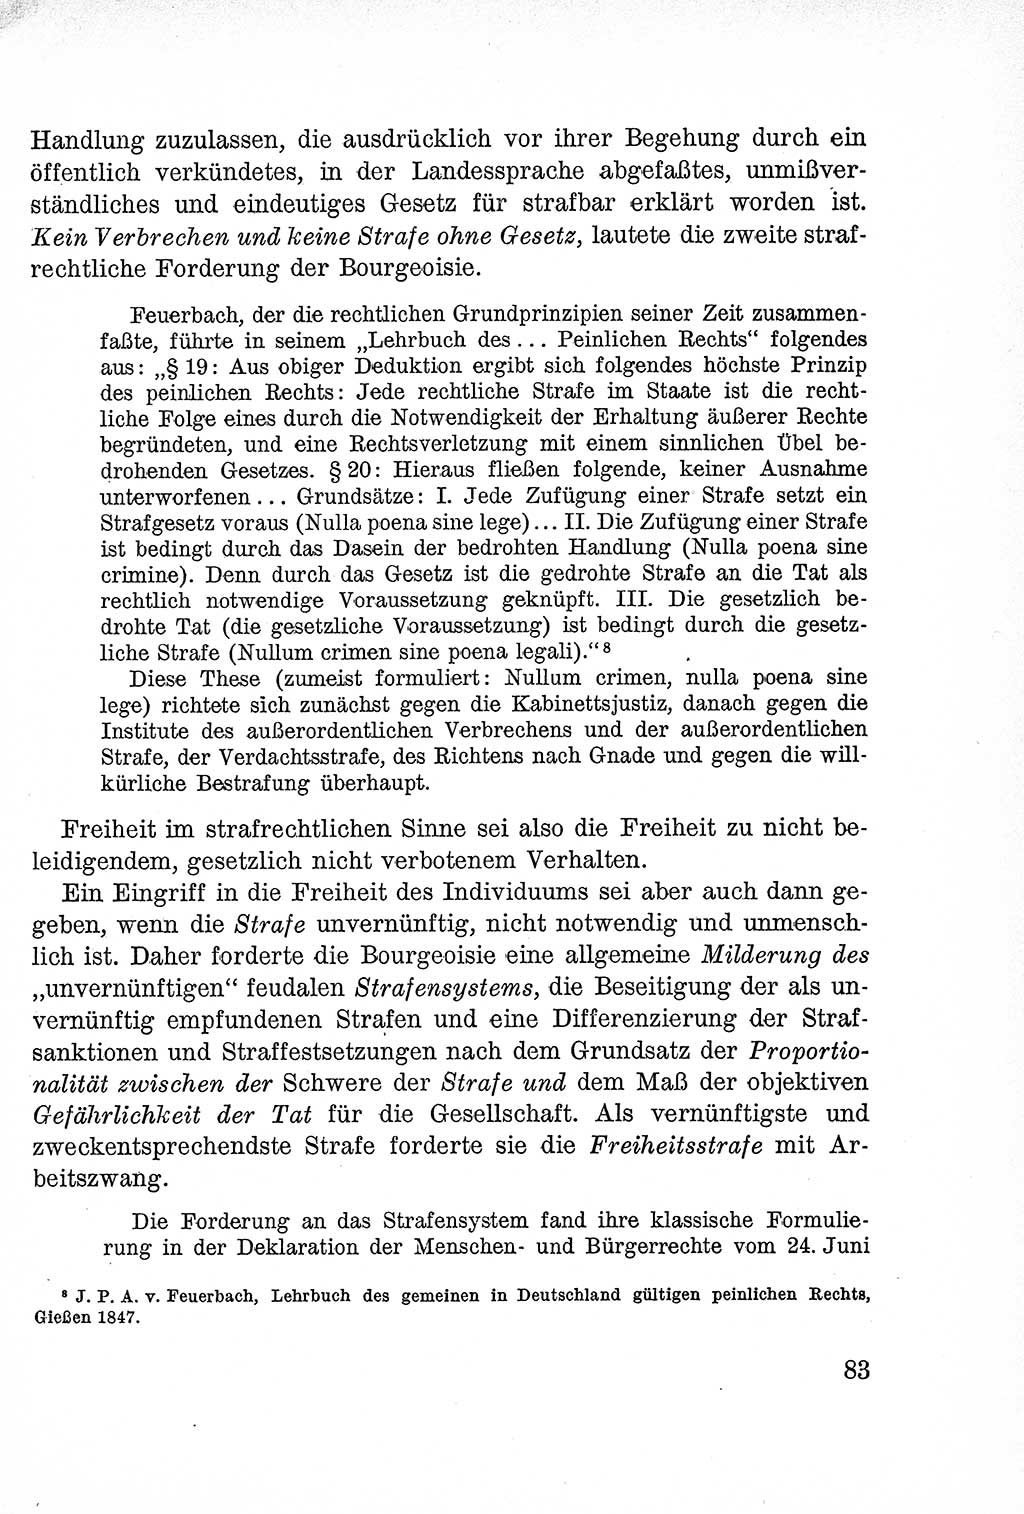 Lehrbuch des Strafrechts der Deutschen Demokratischen Republik (DDR), Allgemeiner Teil 1957, Seite 83 (Lb. Strafr. DDR AT 1957, S. 83)